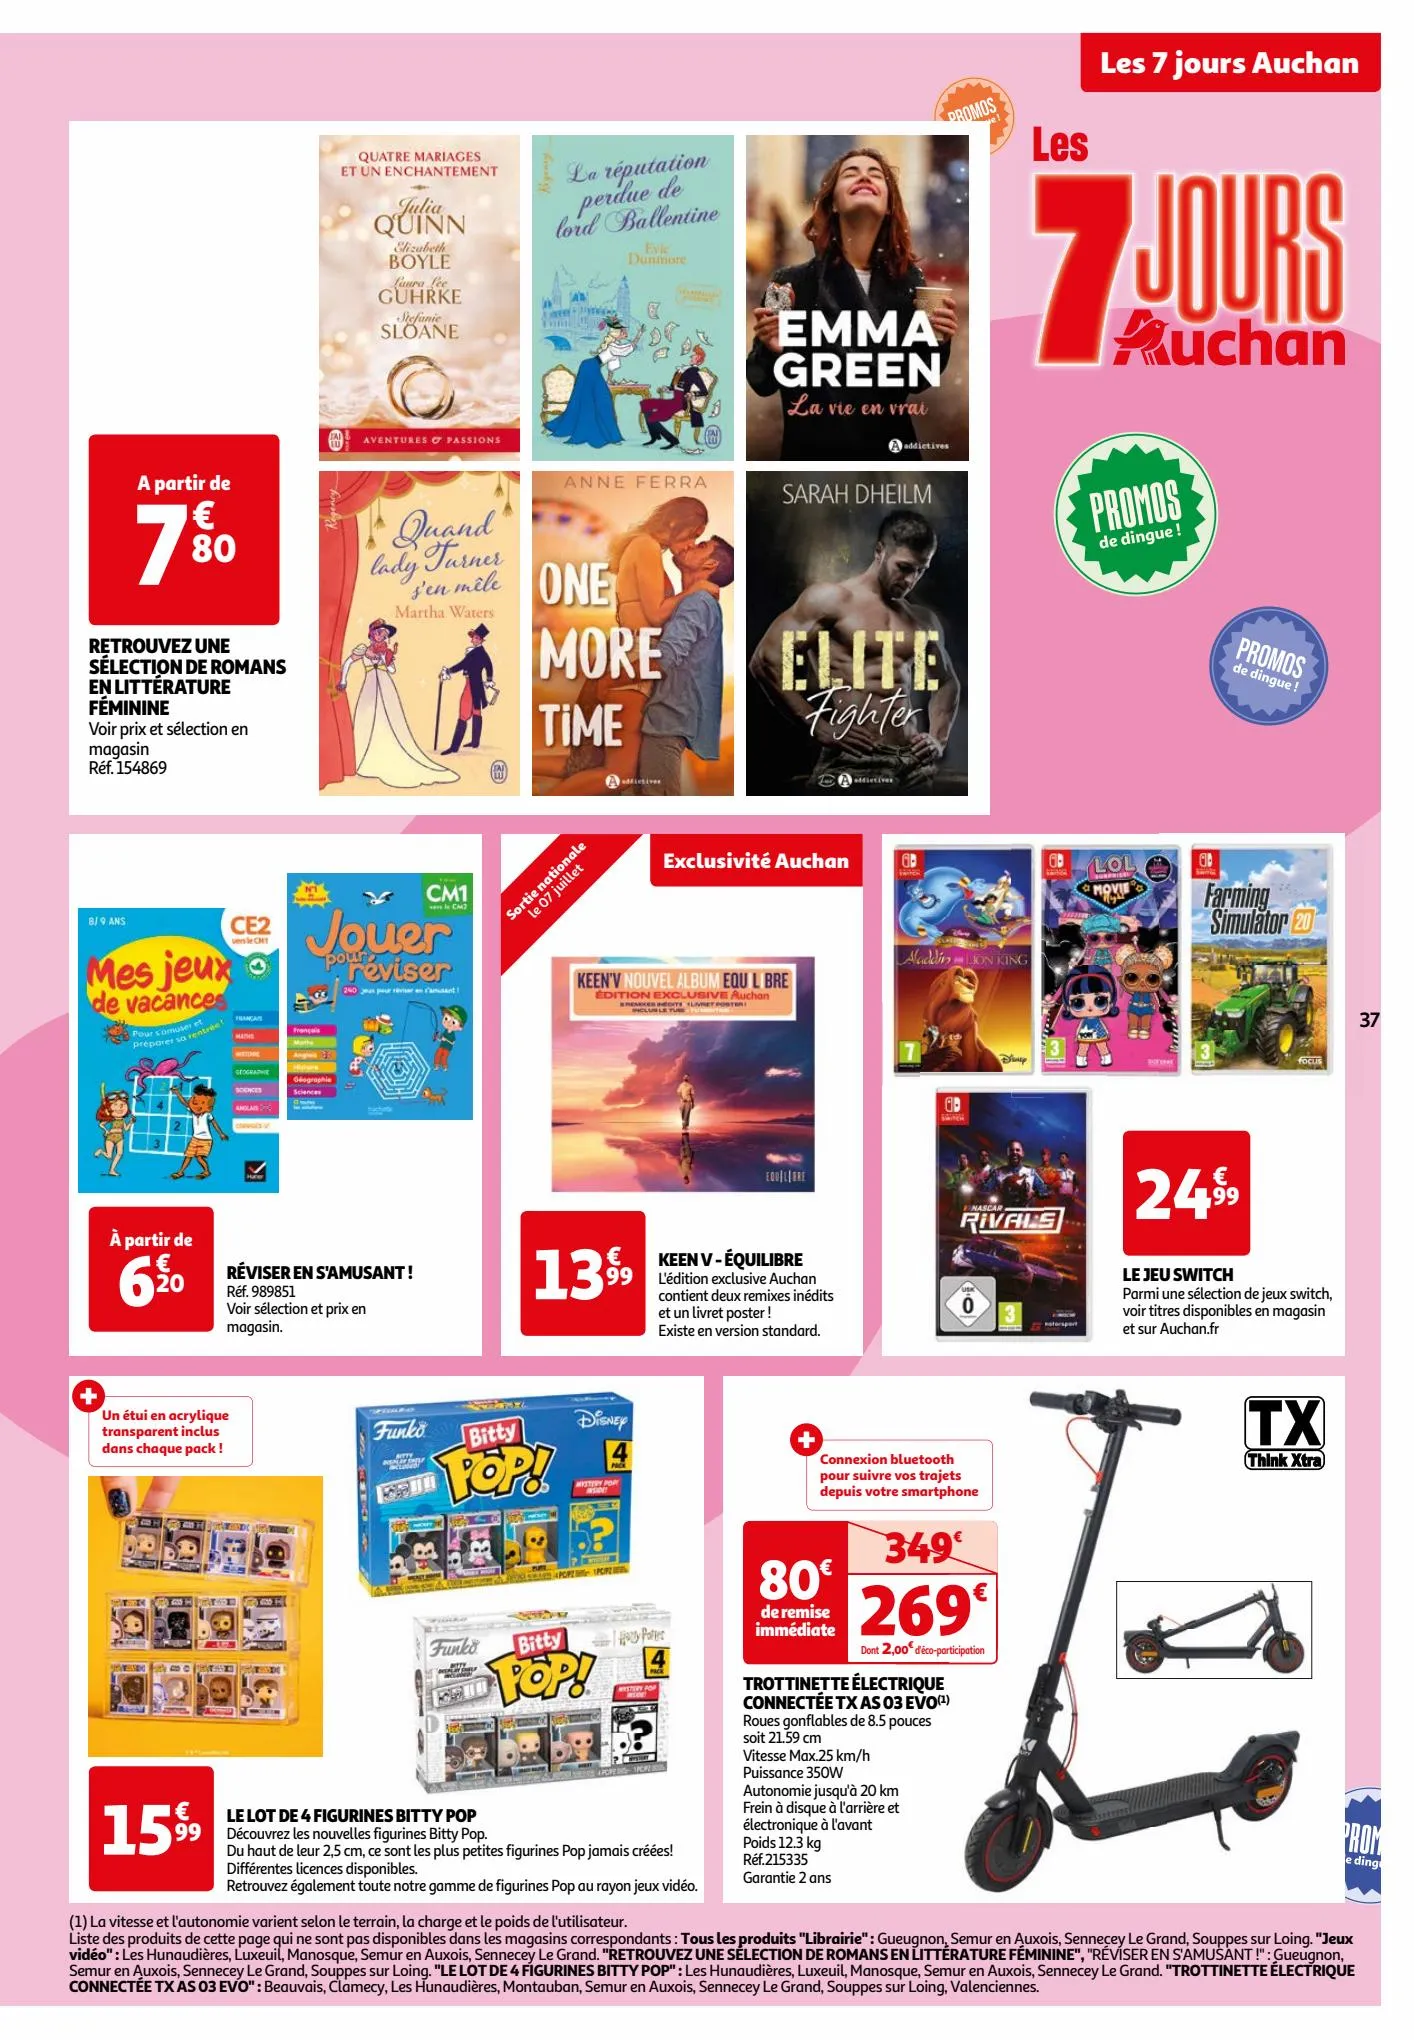 Catalogue Les 7 jours Auchan, page 00037